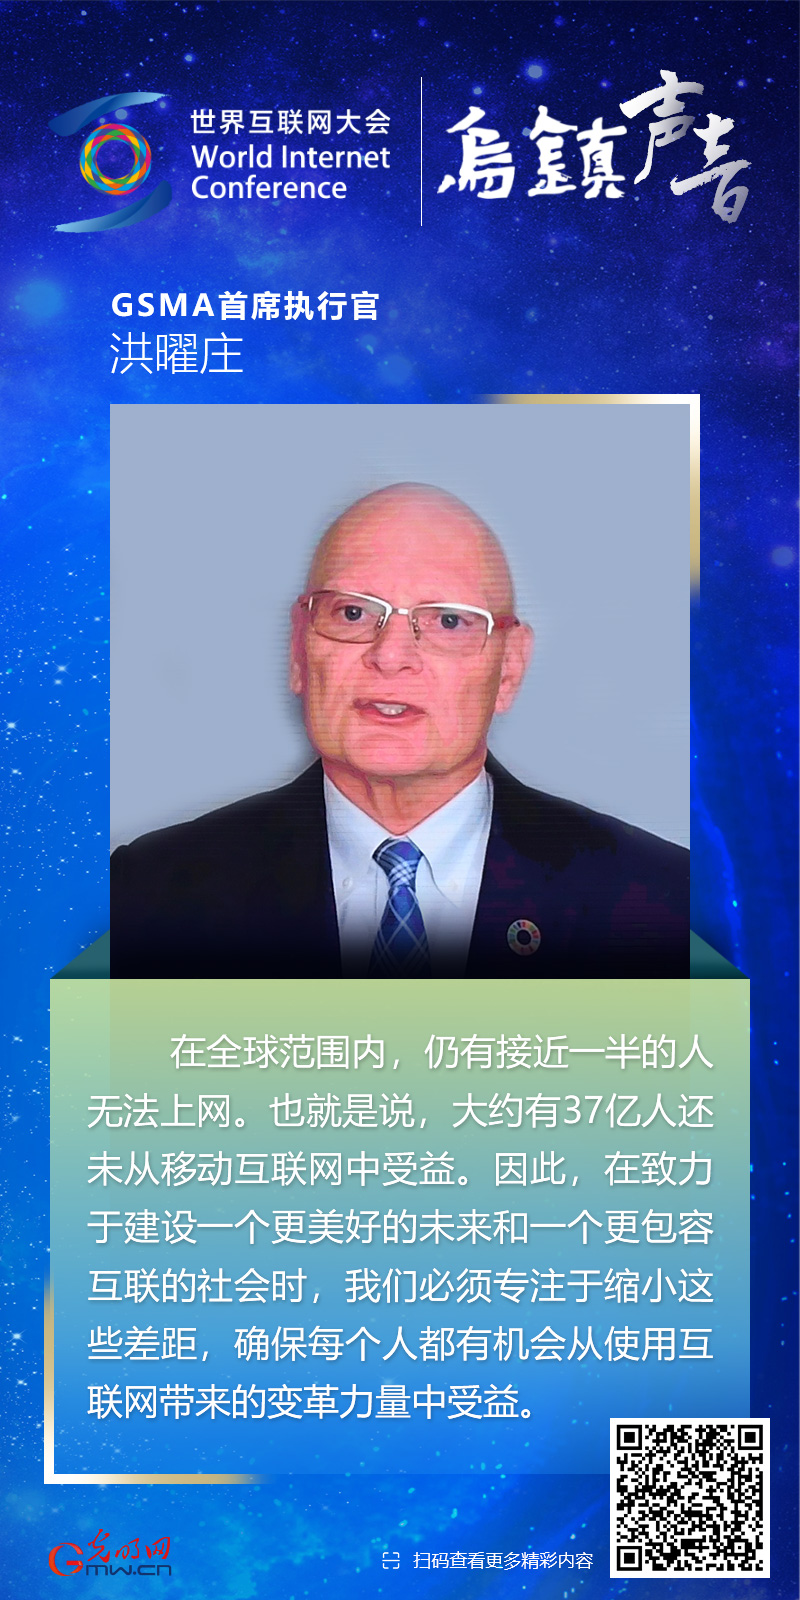 【乌镇声音】海报丨GSMA首席执行官洪曜庄：消除数字鸿沟 需要持续创新合作